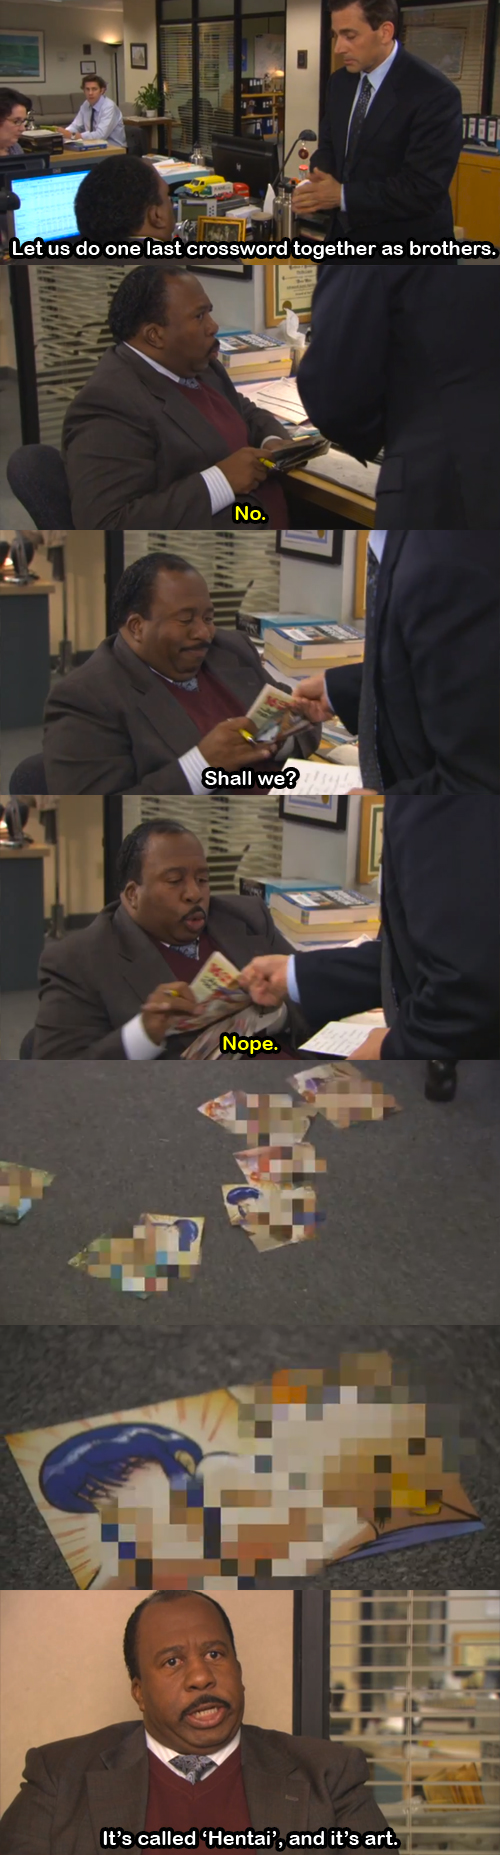 Dammit Stanley